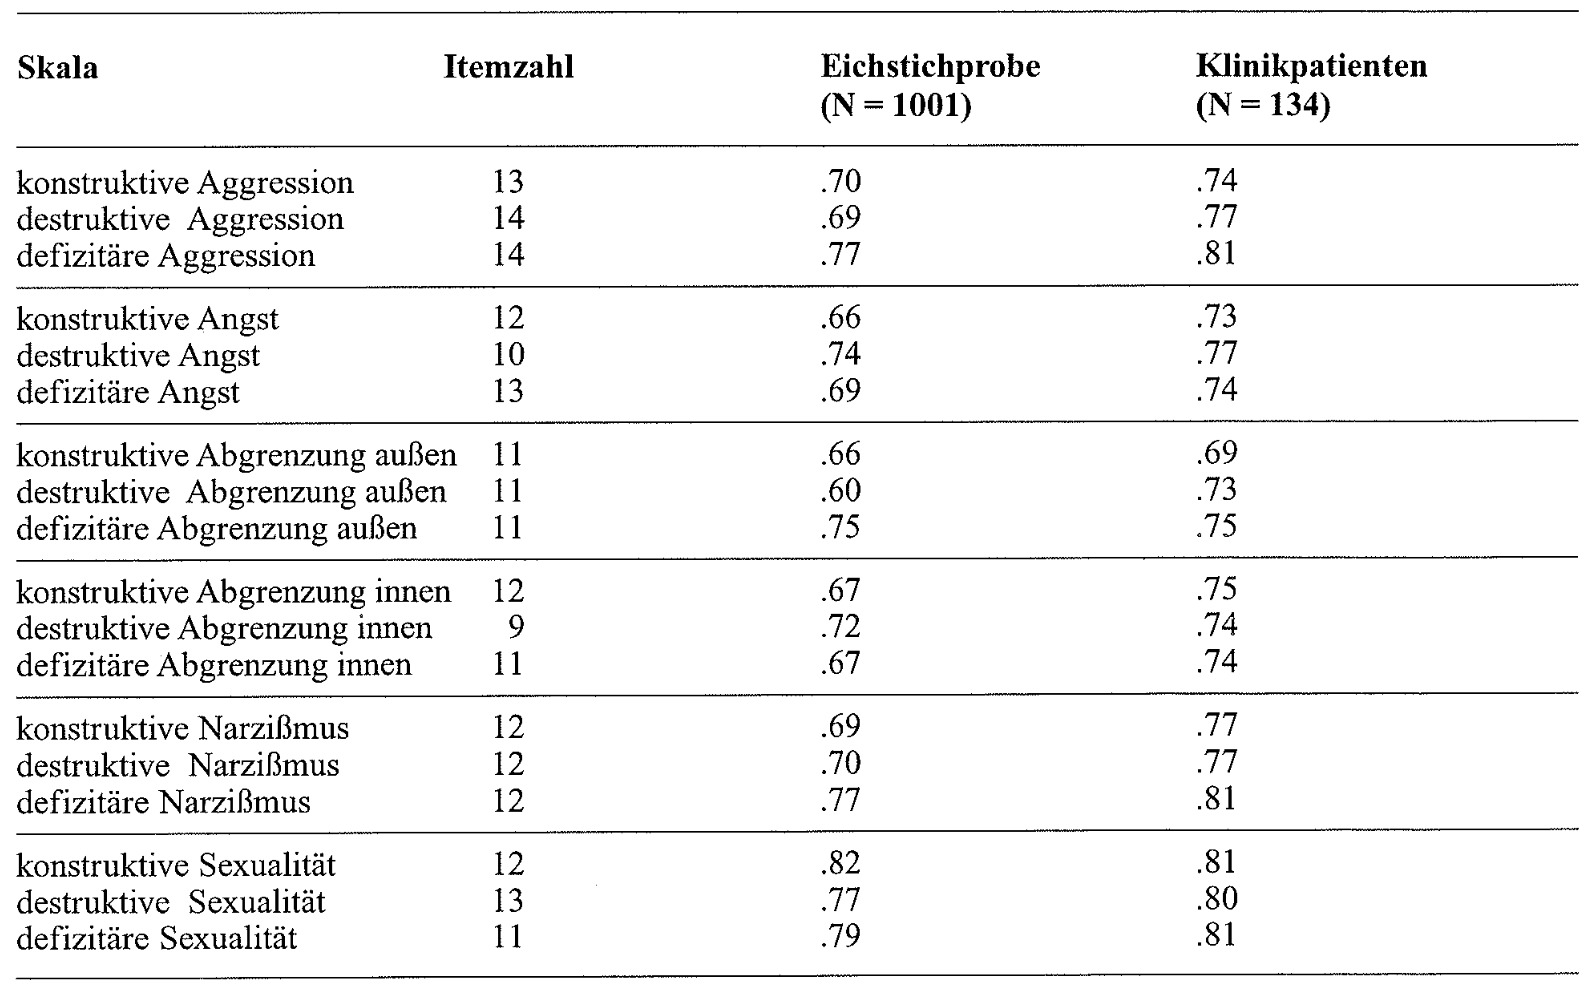 Tabelle 9: Cronbach Alpha der ISTA-Skalen in der Eichstichprobe (N = 1001) und bei N = 134 Klinikpatienten (Aufnahmewerte)